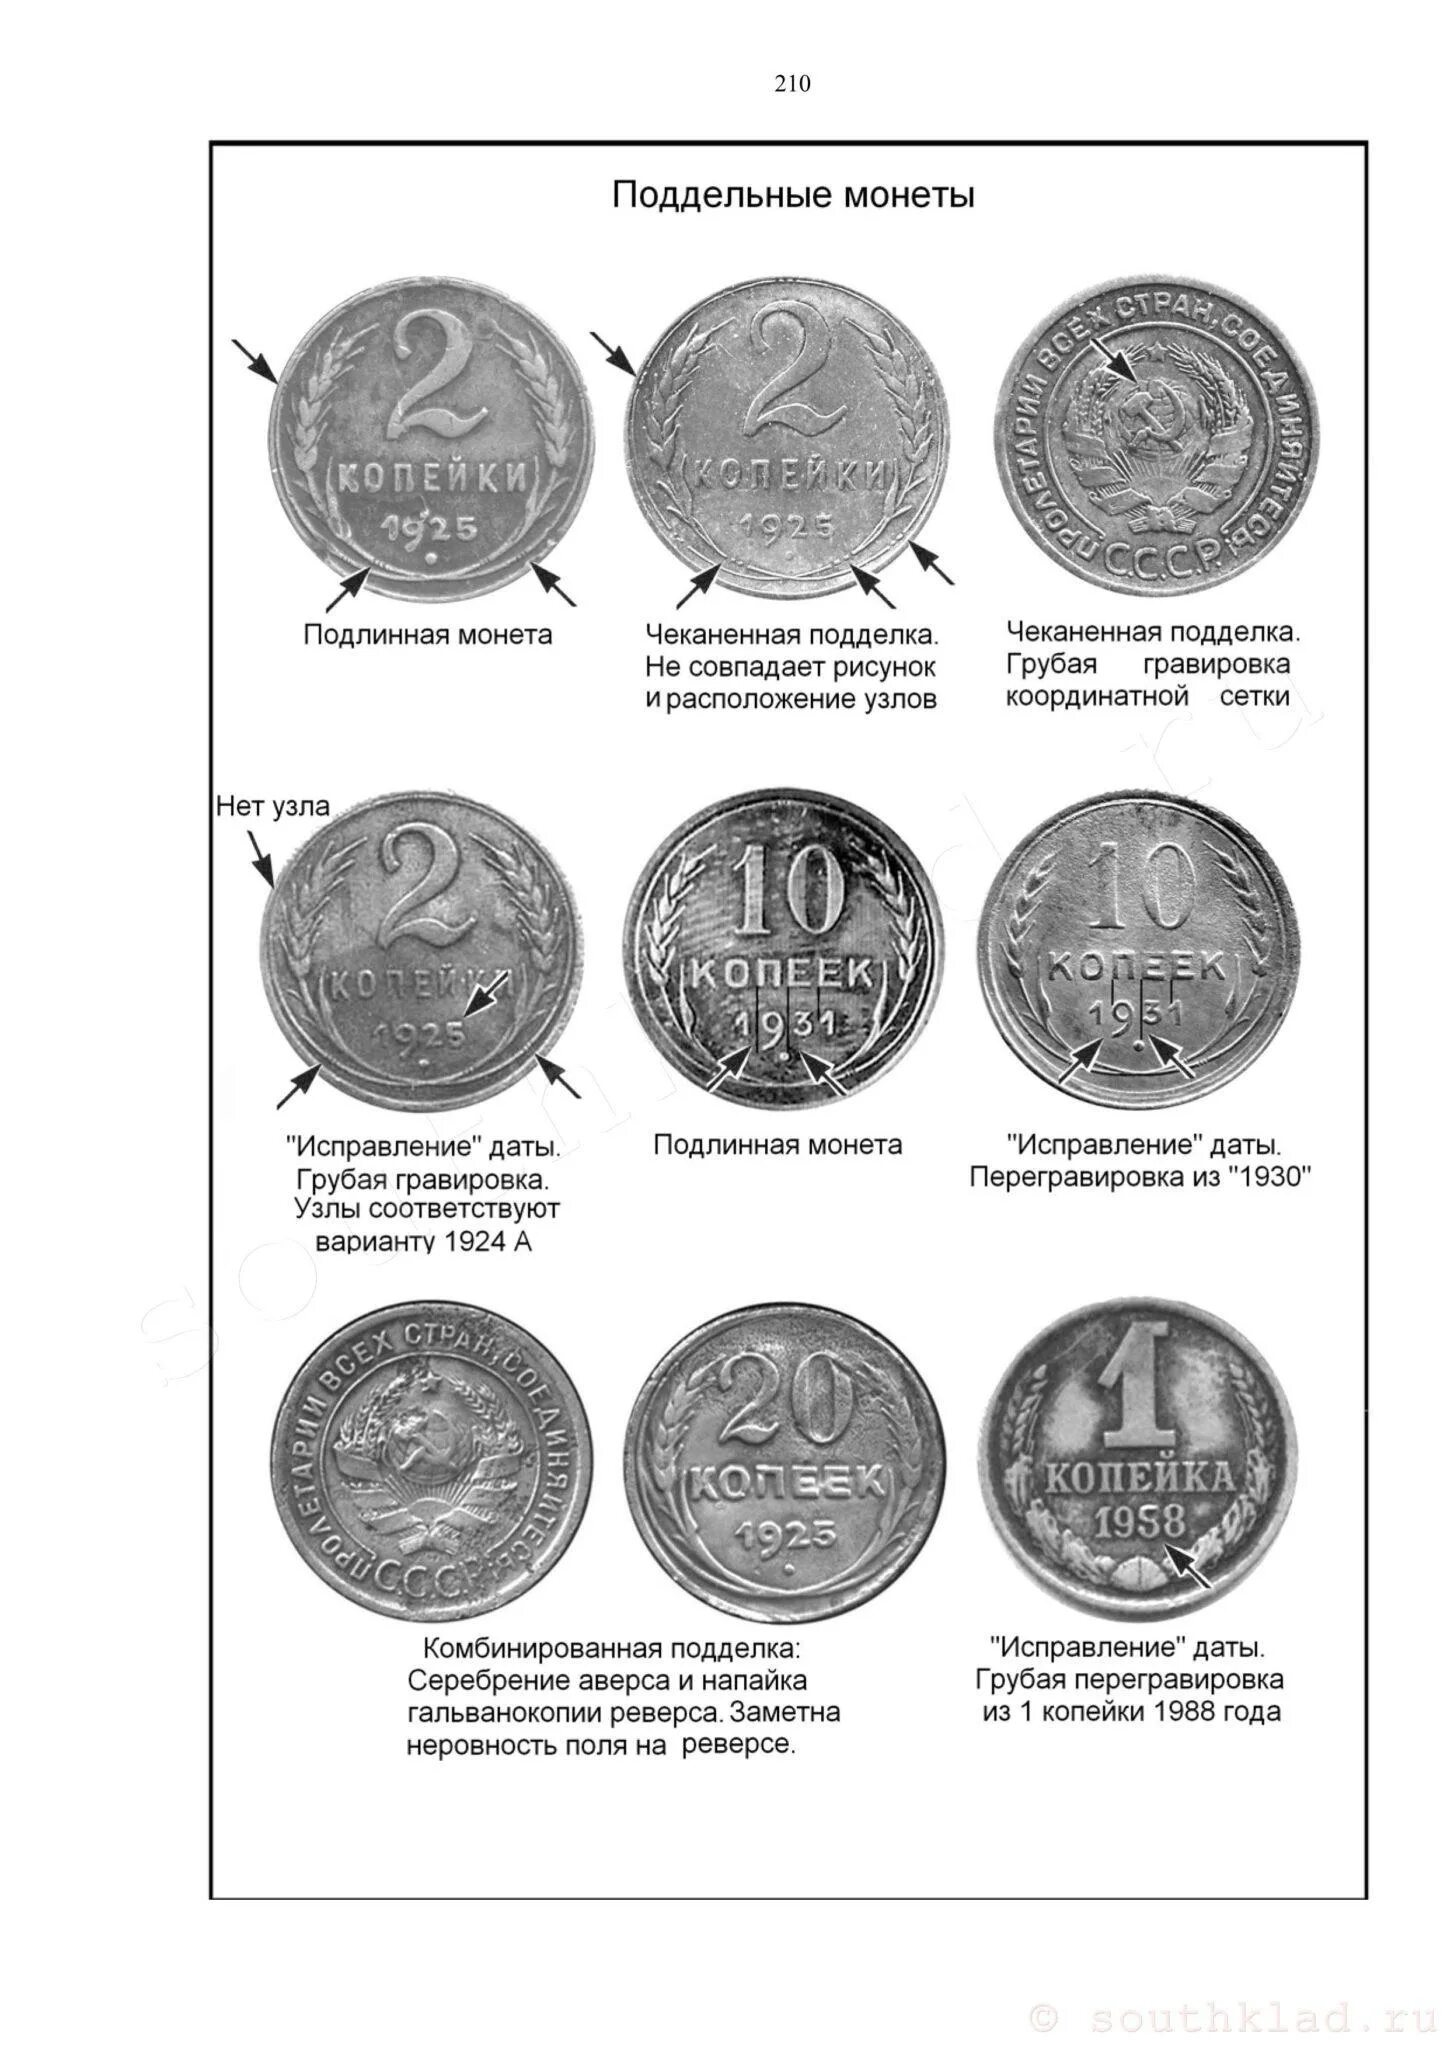 Как отличить фальшивую монету от настоящей. Как отличить копию монеты